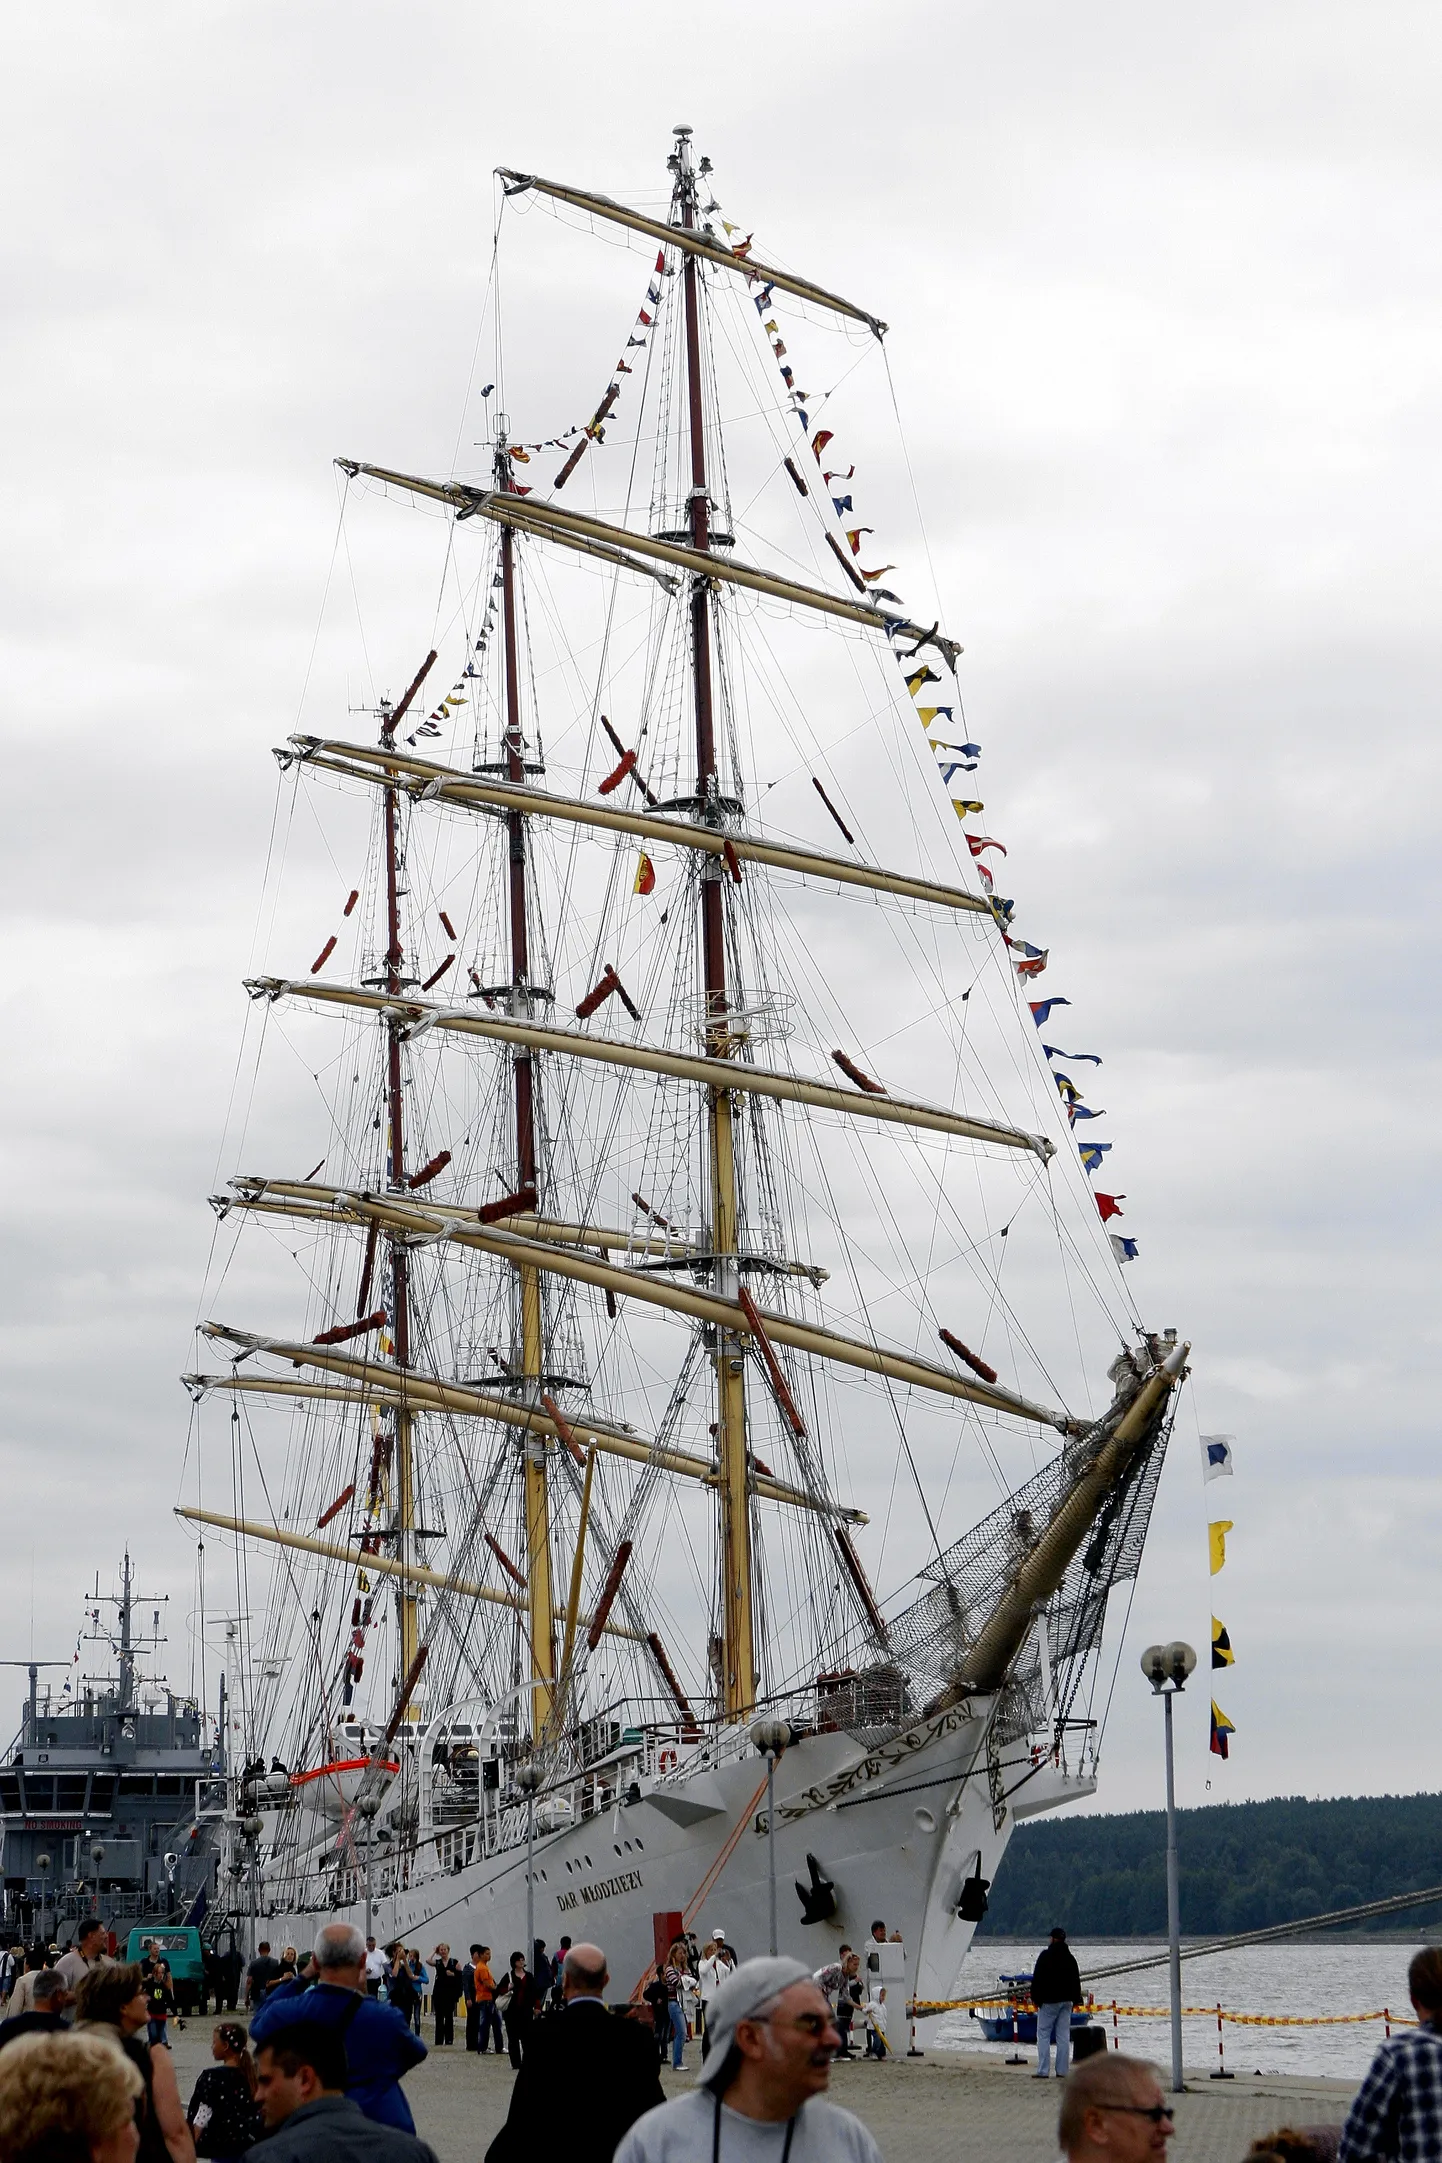 Järgmisel nädalal Tallinna saabuvatest laevadest suurim on Poola purjekas Dar Mlodziezy, mis peatub Vanasadama kruiisikai ääres.